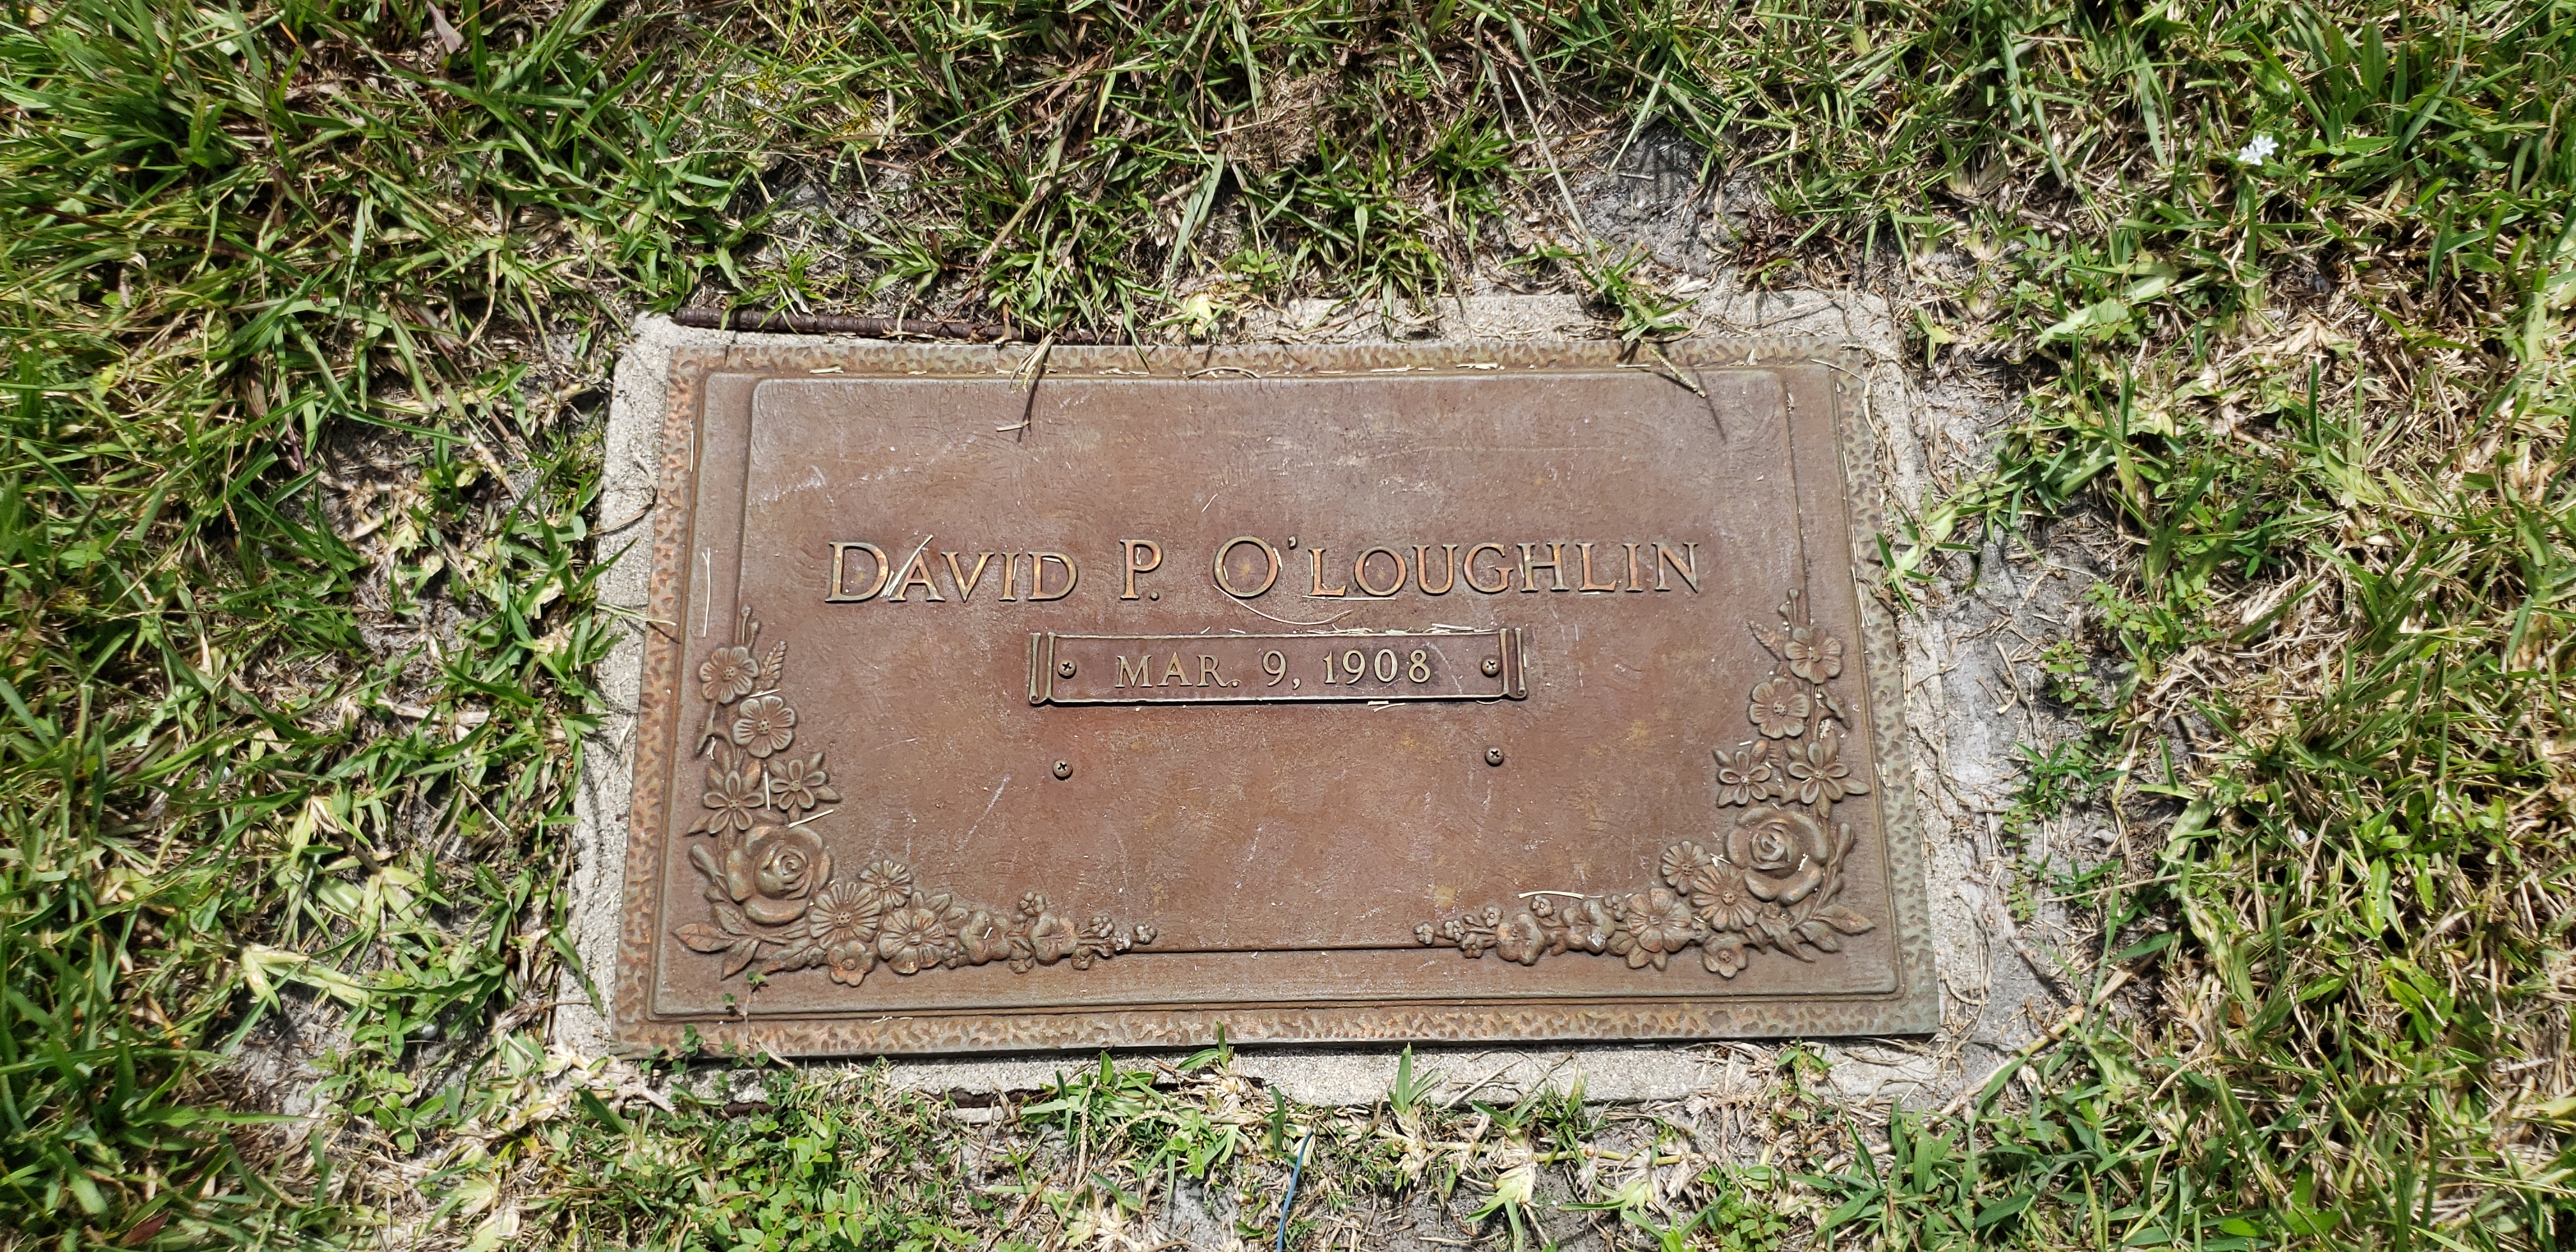 David P O'Loughlin